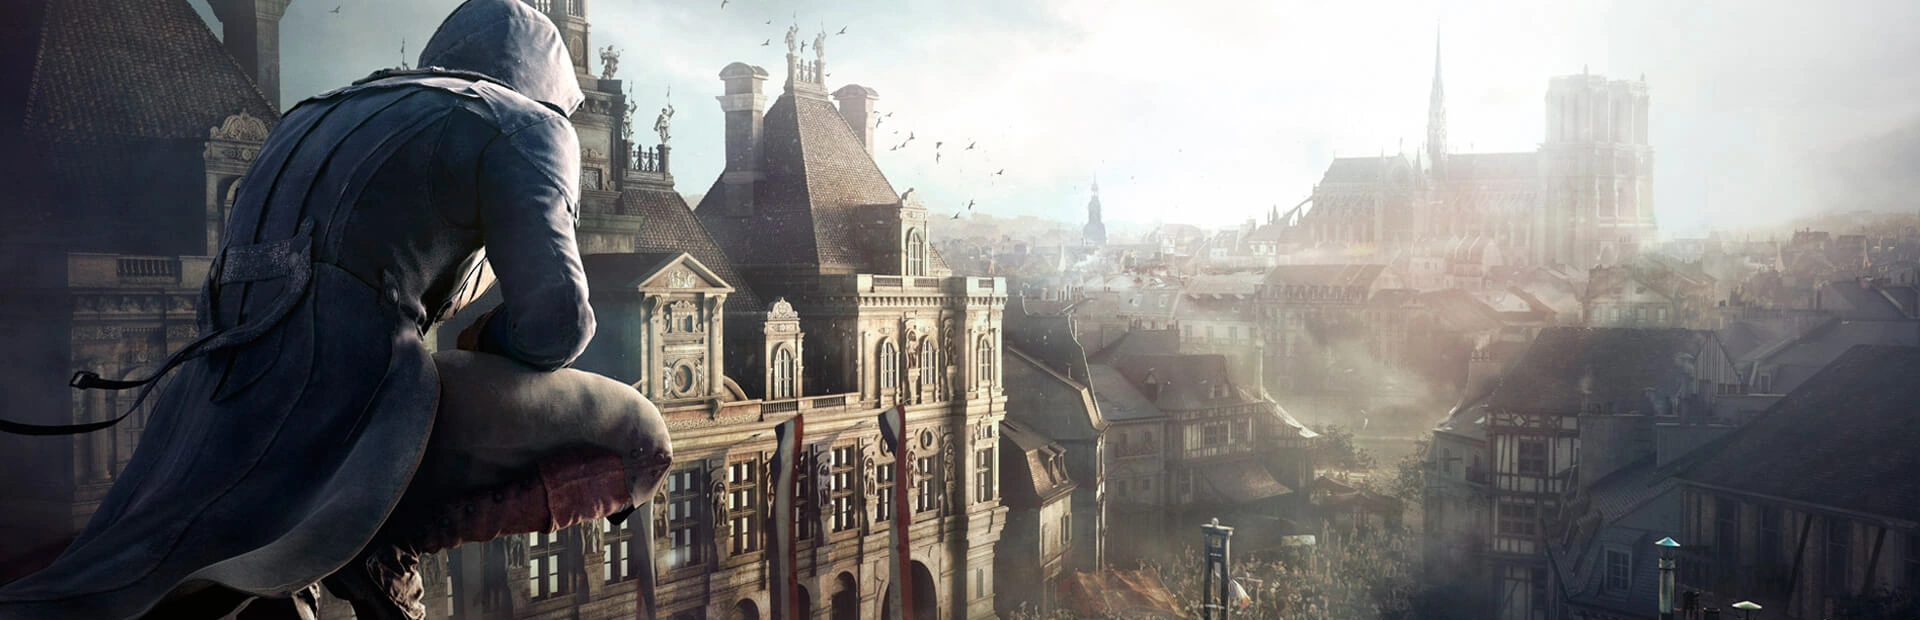 دانلود بازی Assassin's Creed Unity برای کامپیوتر | گیمباتو